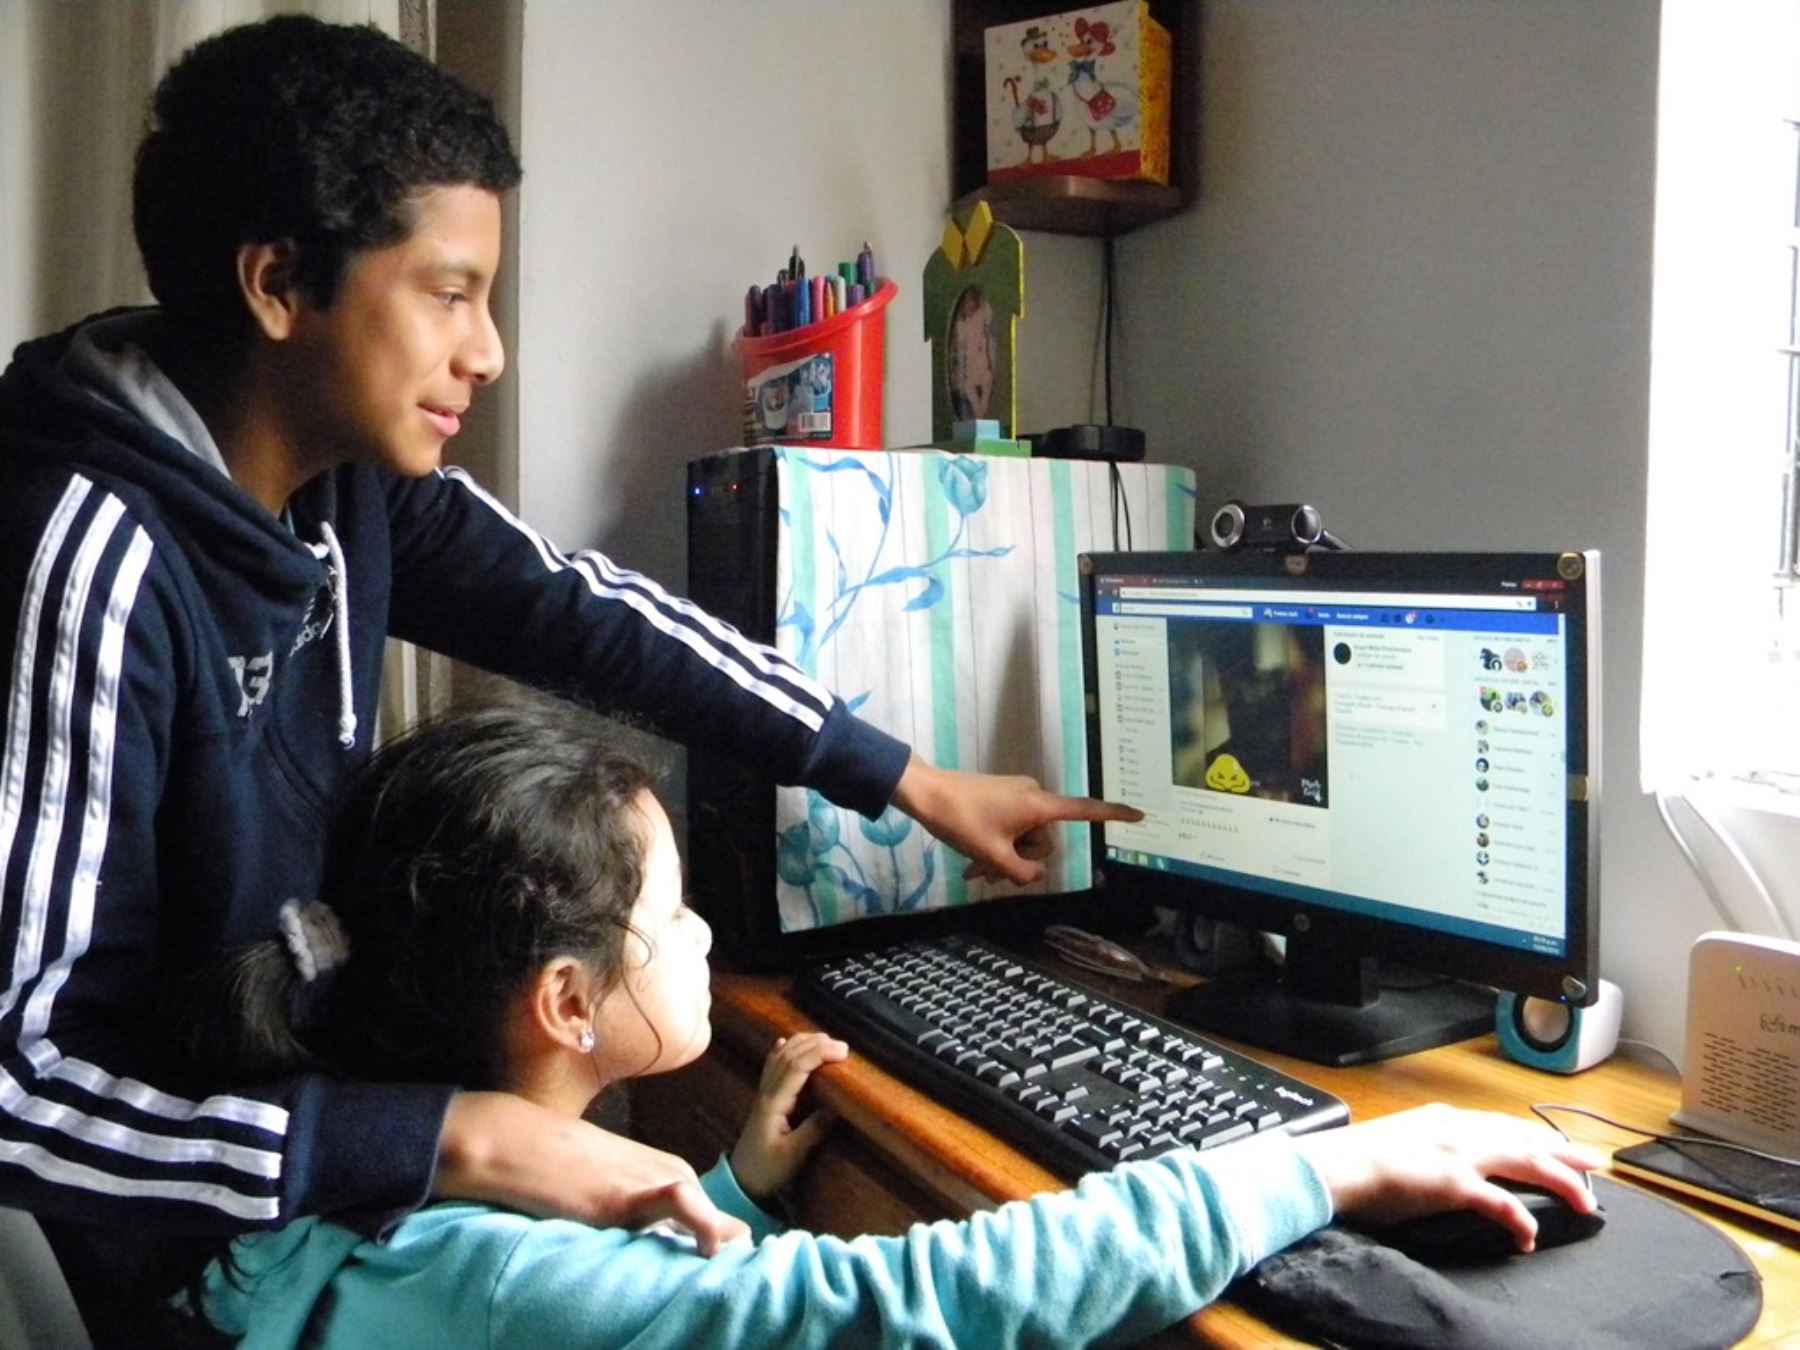 Un estudio de Kaspersky revela que a un 44% de padres le preocupa que Internet represente una amenaza para sus hijos. Foto: Difusión